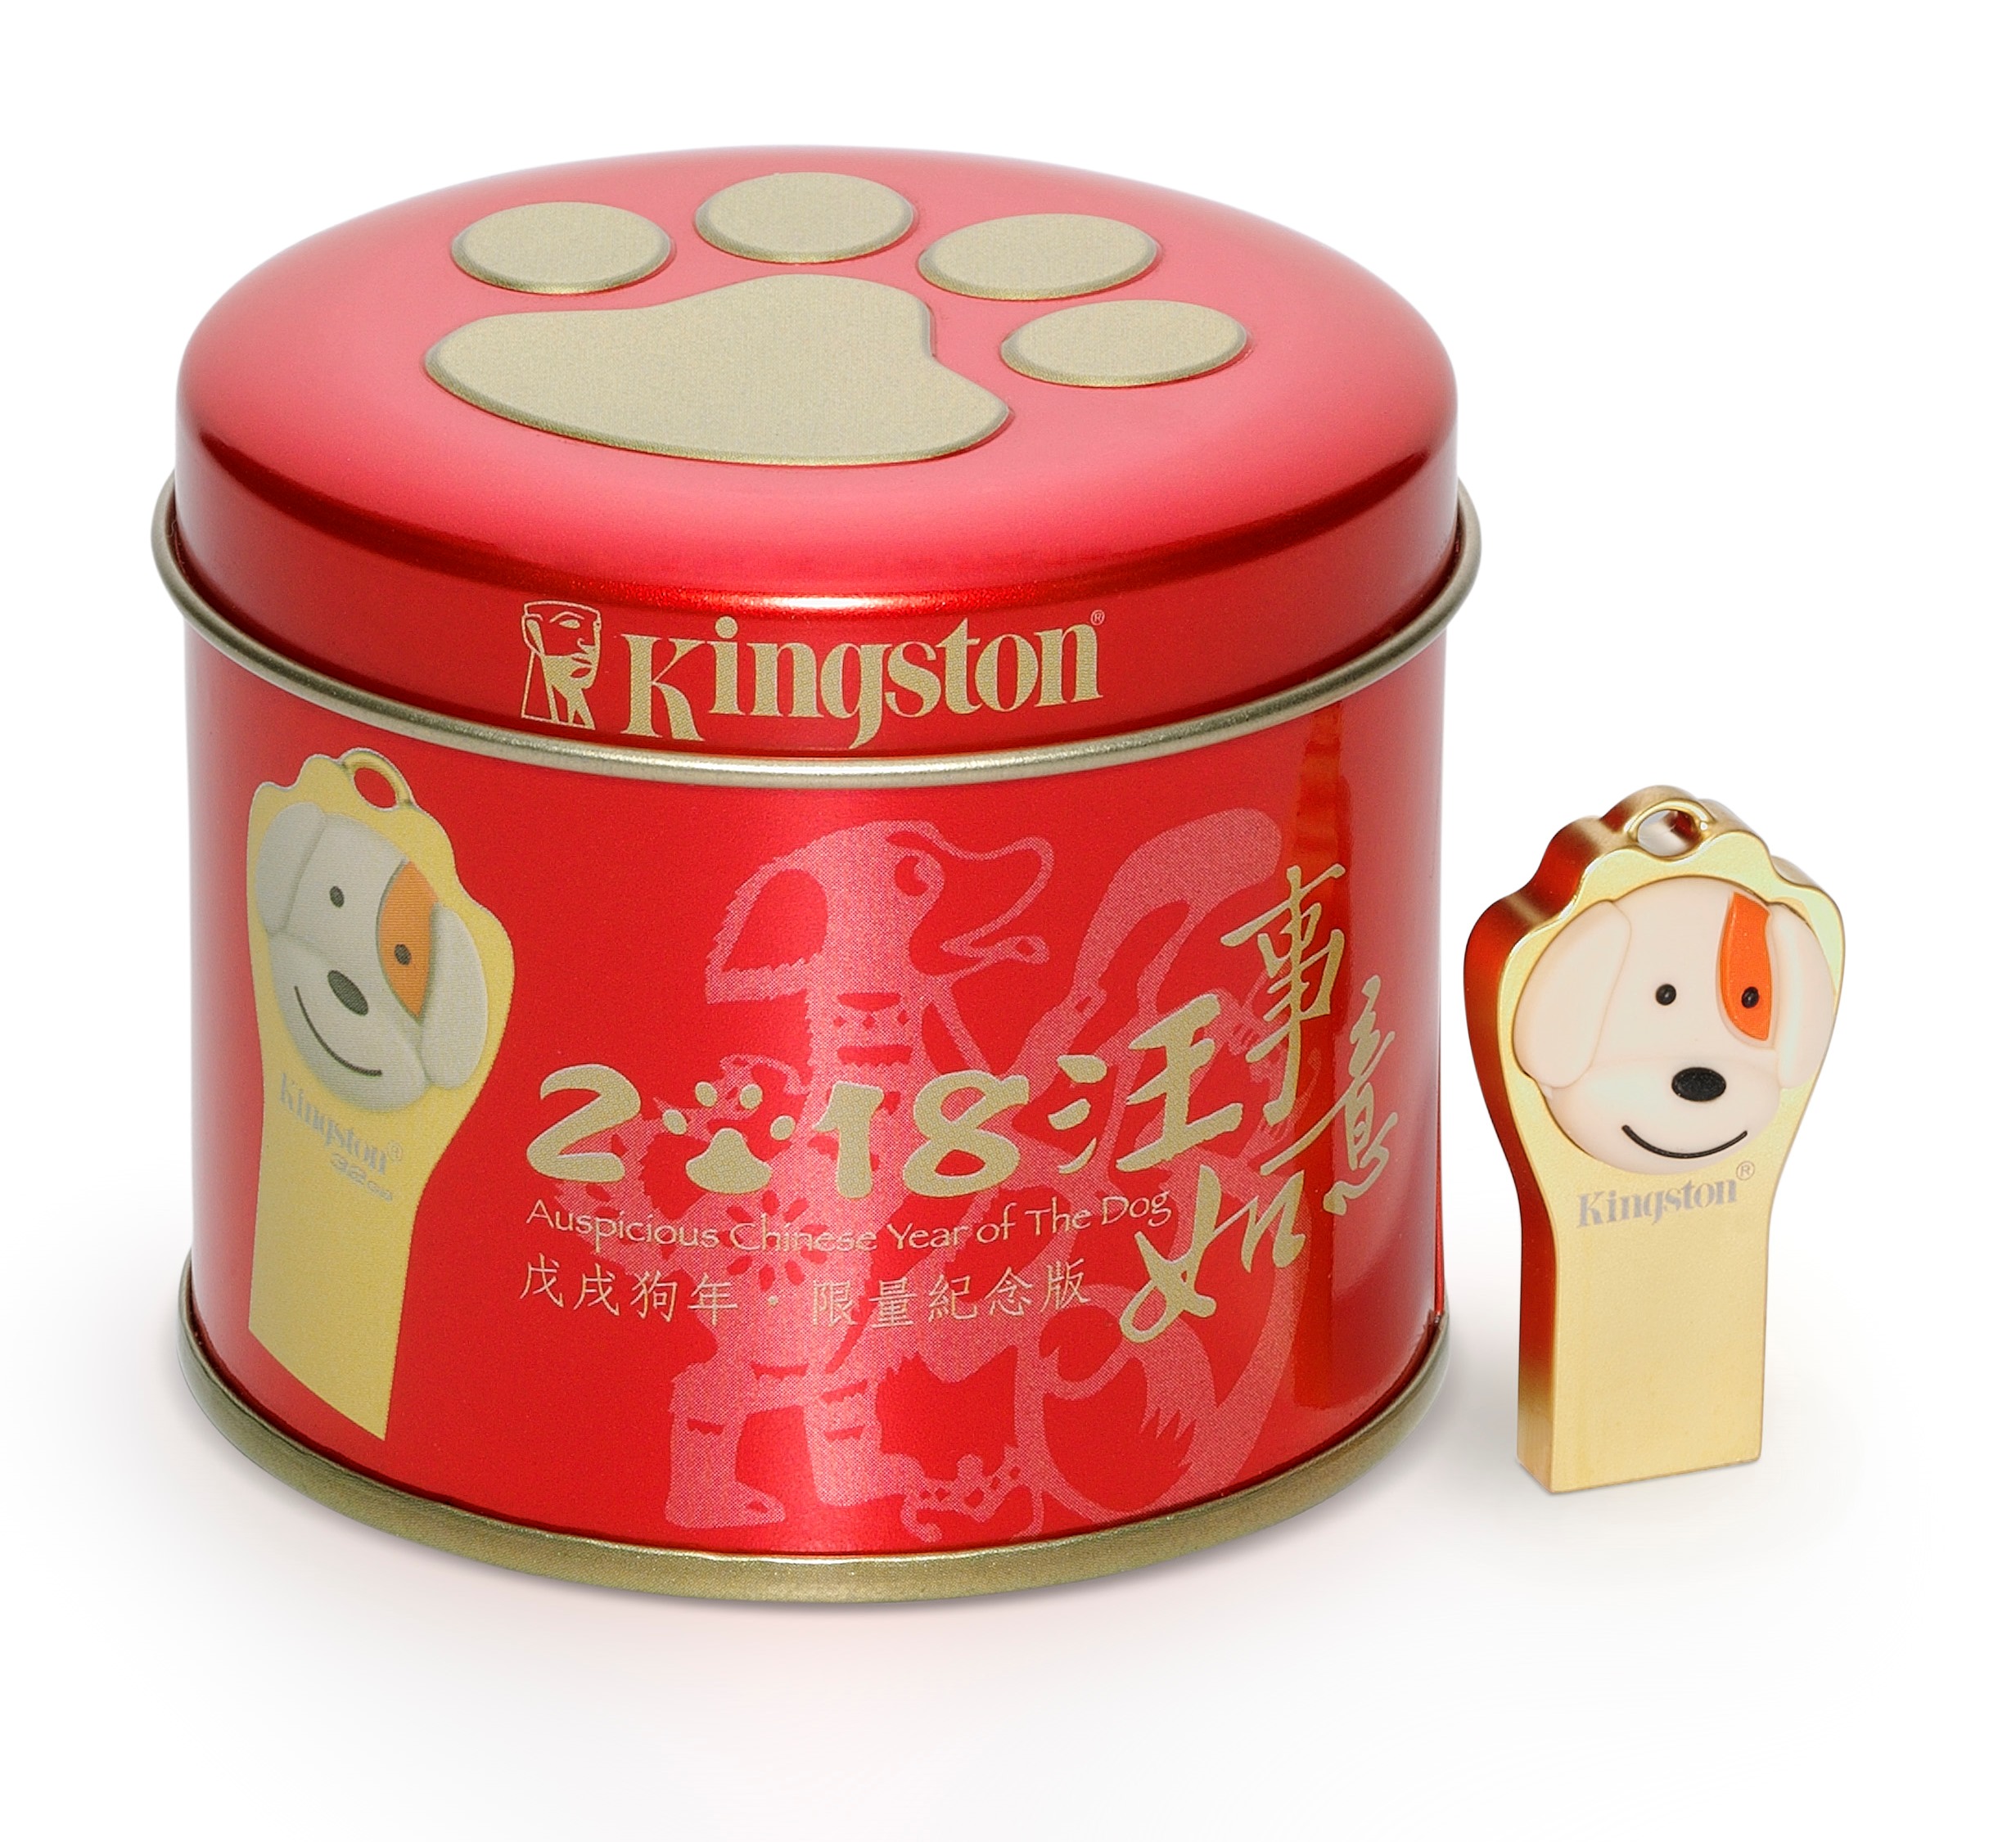 kingston year of the dog usb drive Kingston เปิดตัวผลิตภัณฑ์ใหม่ ยูเอสบีไดรฟ์ลายสุนัข ต้อนรับปีจอตามซีรีย์ปีนักษัตรจีน